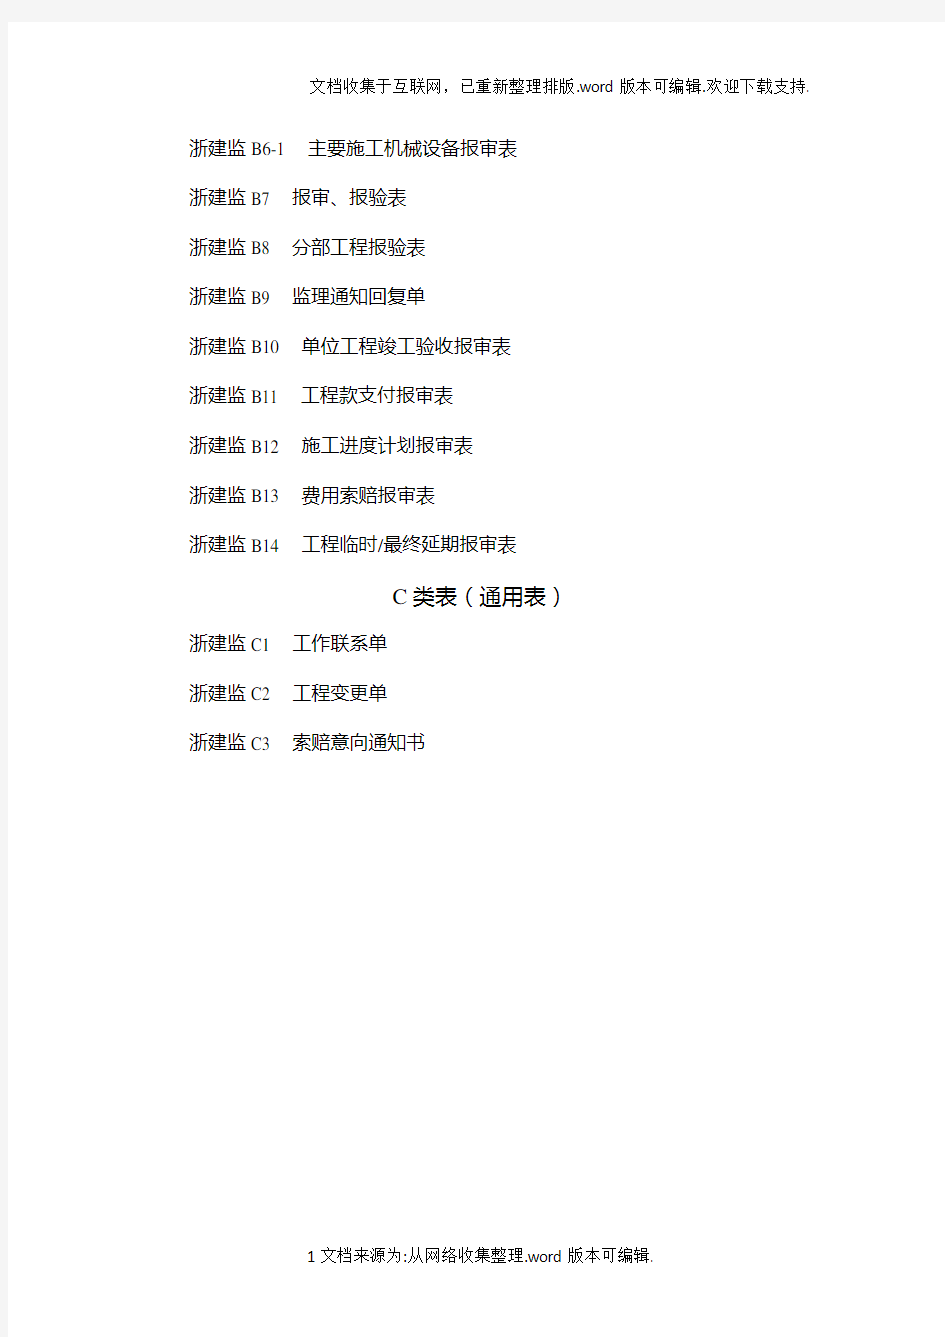 新版浙江省工程建设标准表格